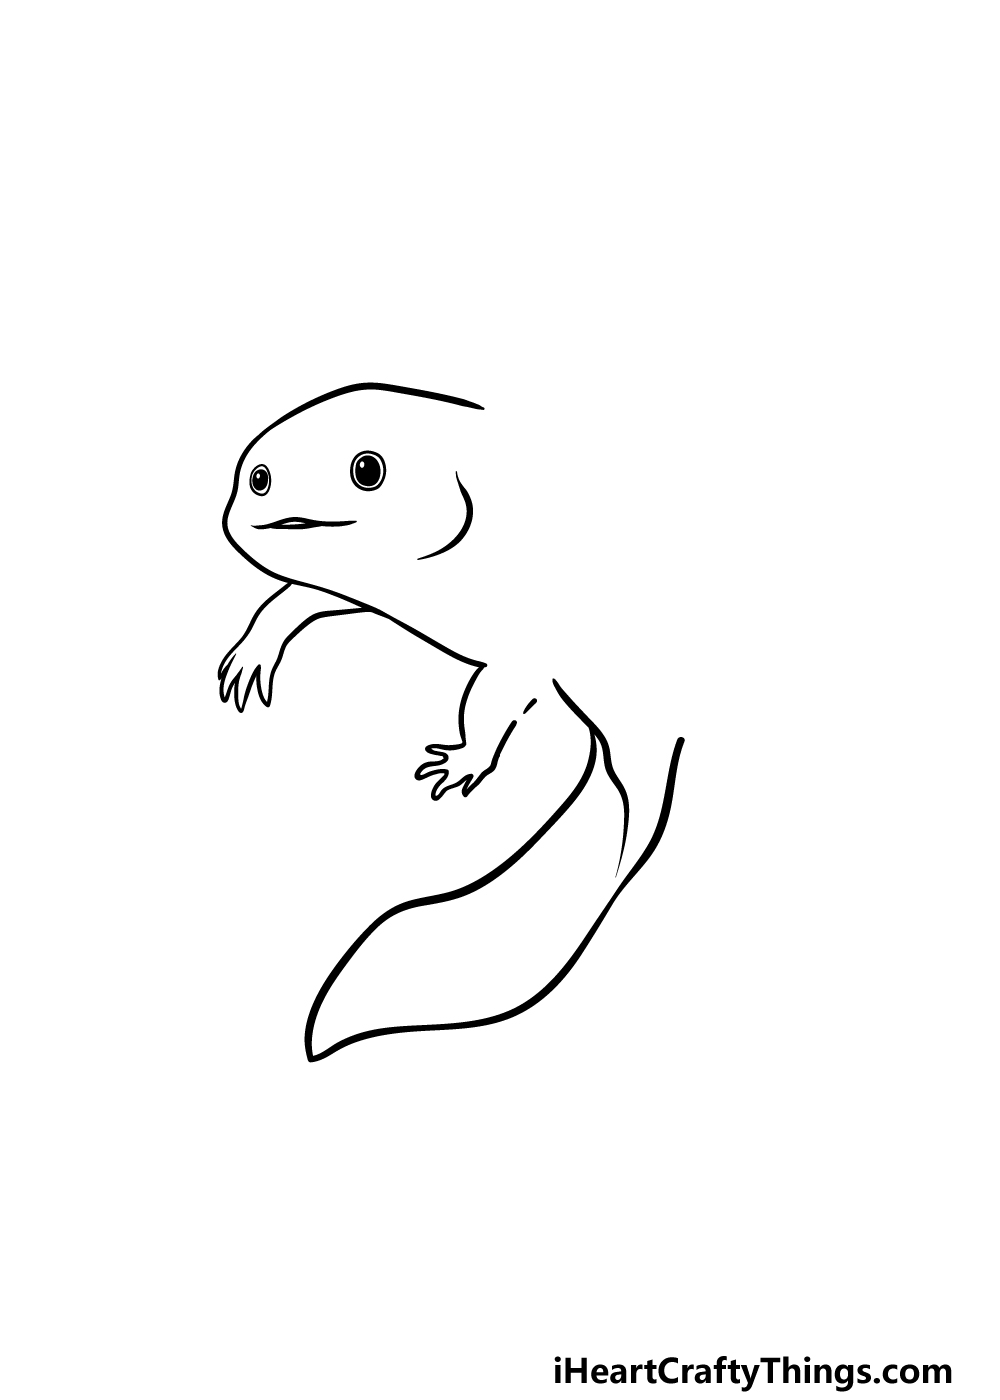 Drawing Axolotl step 3